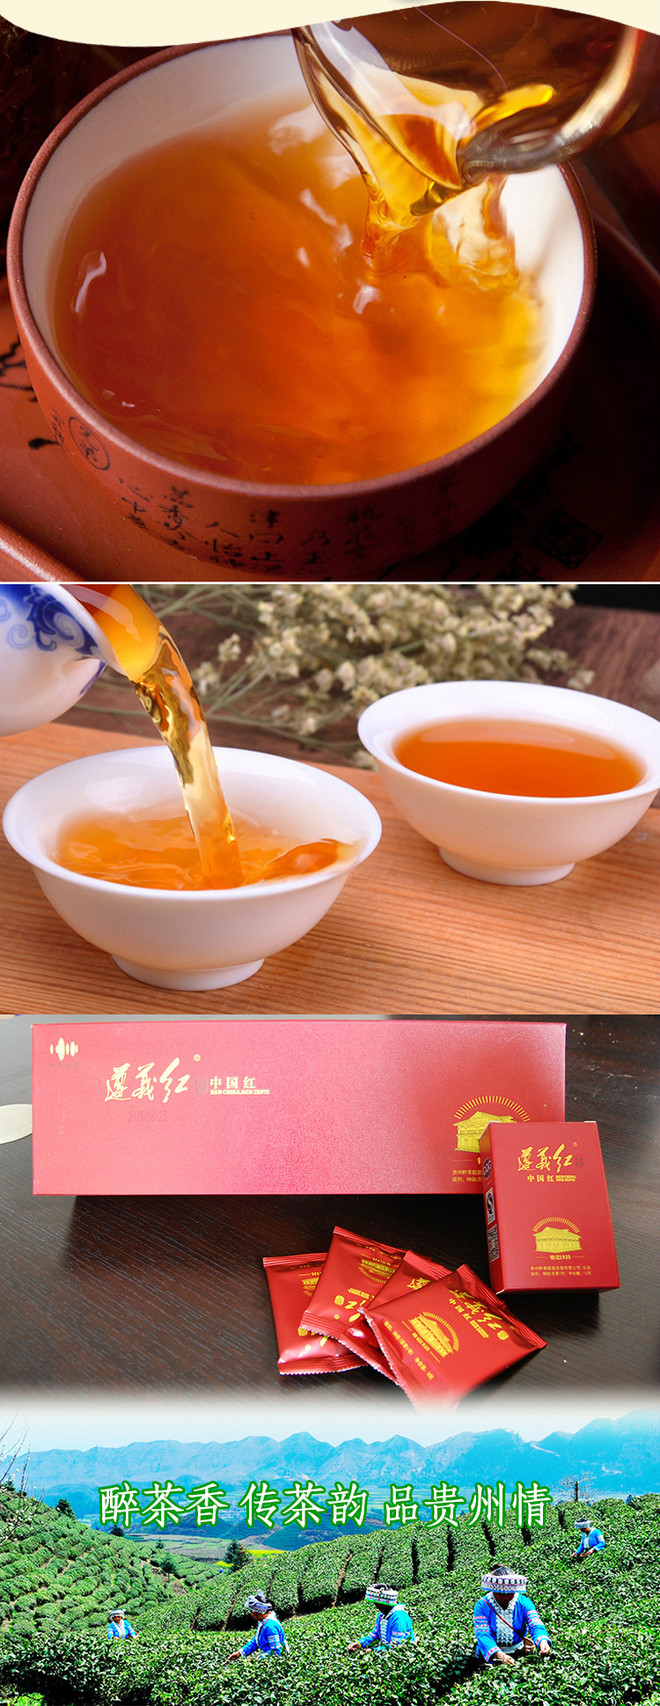 遵义红茶 中国红 特级(苔茶1号)120g